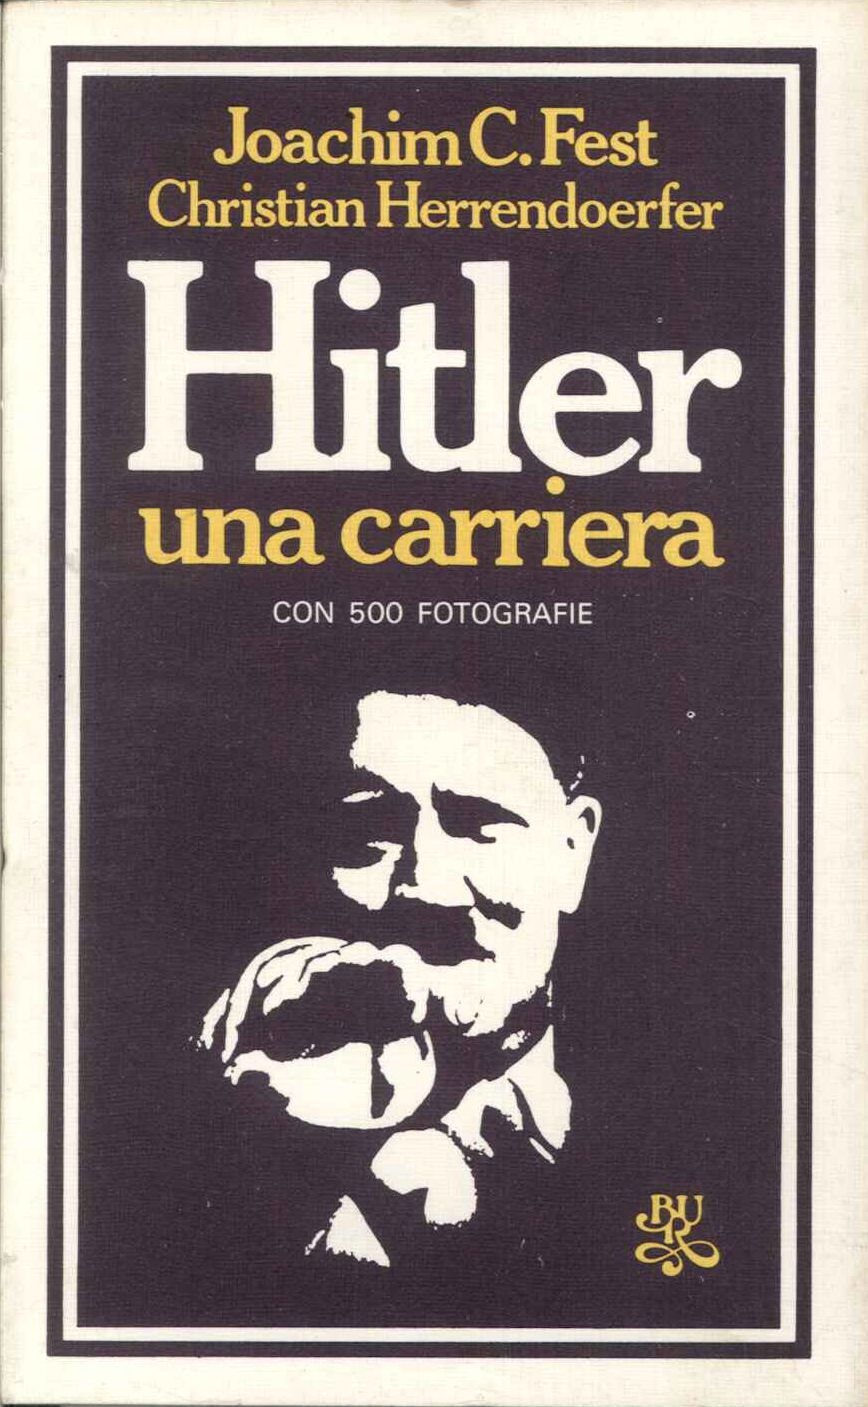 Hitler una carriera